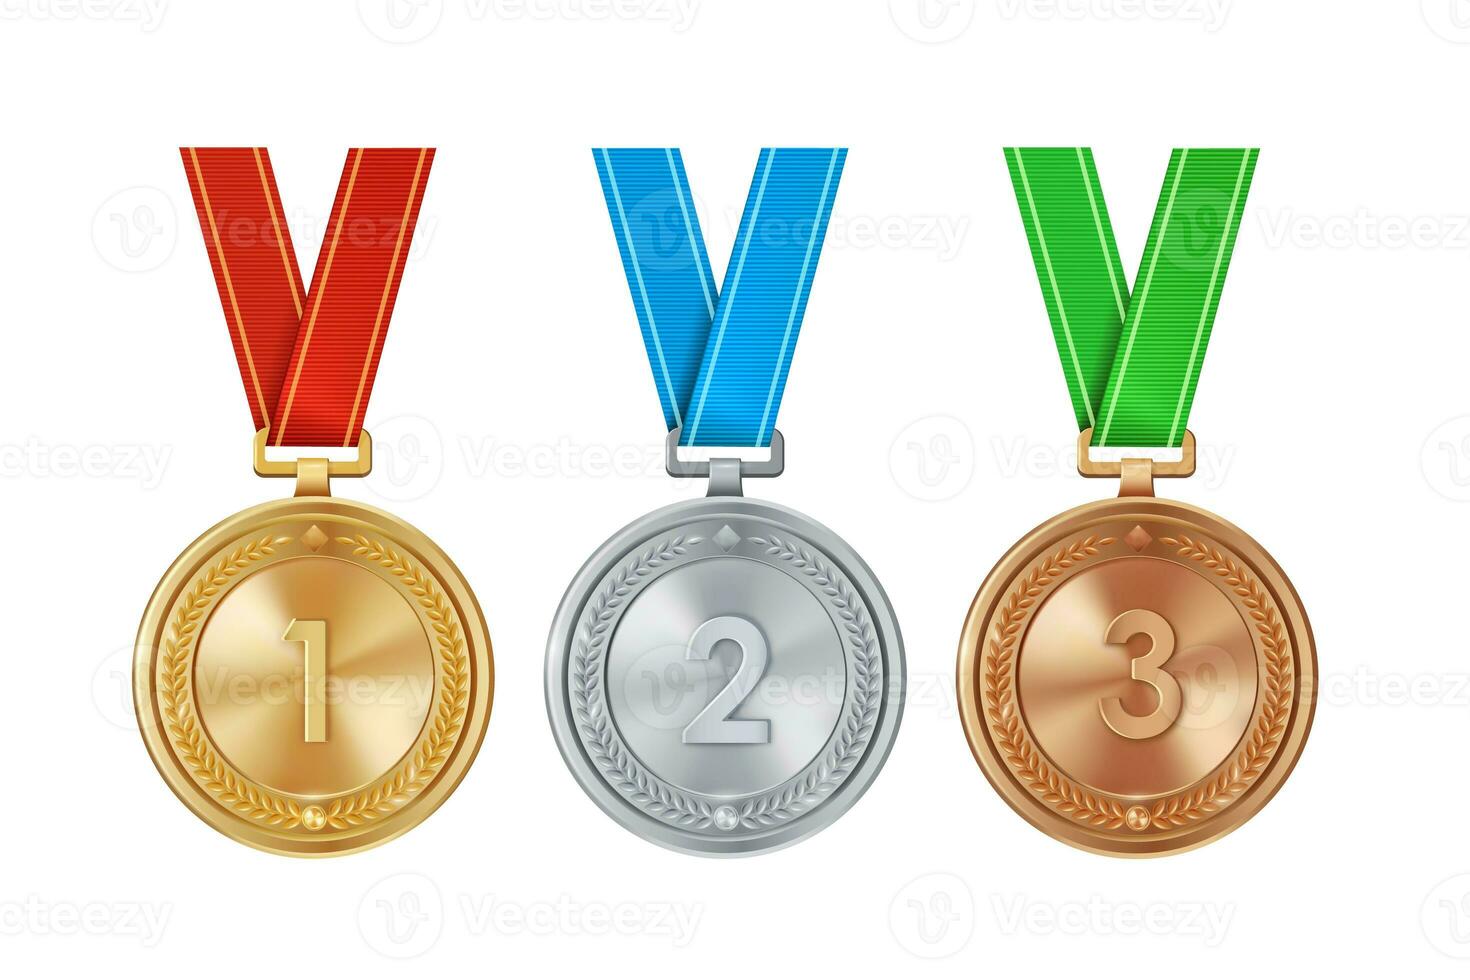 realistisk uppsättning av gyllene, silver, och brons medaljer på färgrik band. sporter konkurrens utmärkelser för 1:a, 2:a, och 3:e plats. mästerskap belöningar för prestationer och segrar. foto